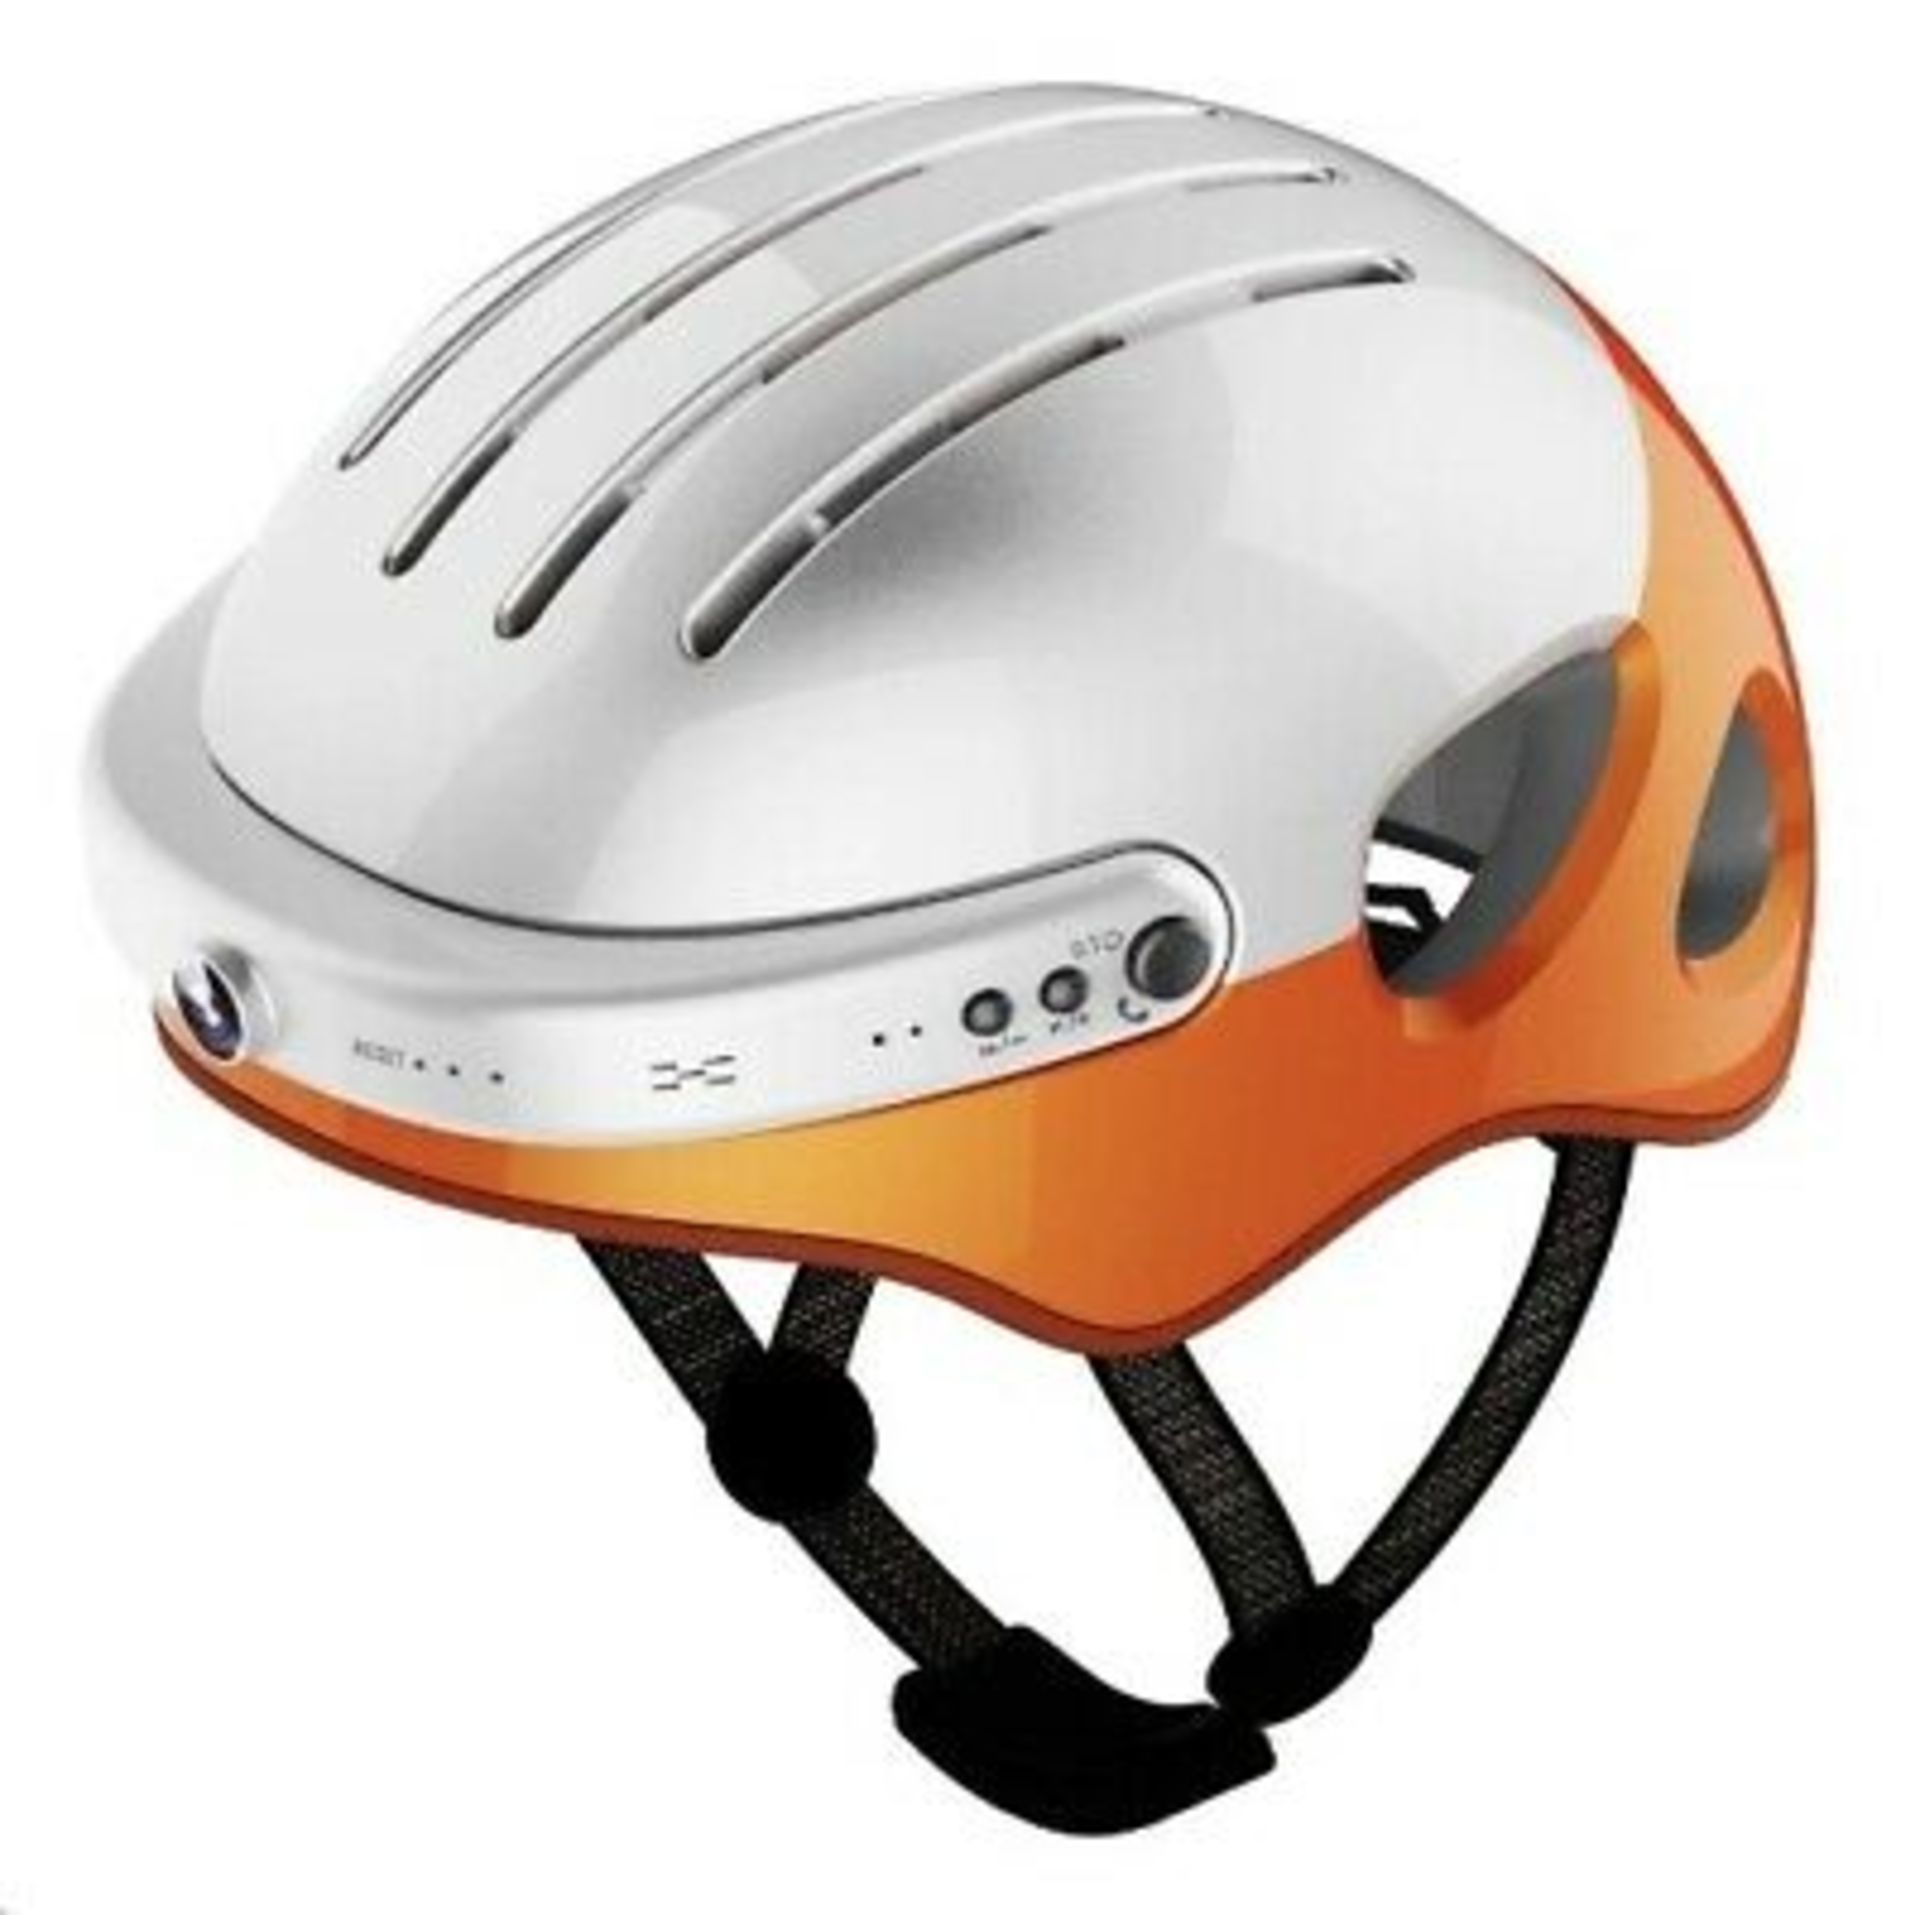 Sports Crash Helmet With Camera Built In. Carbon Fibre